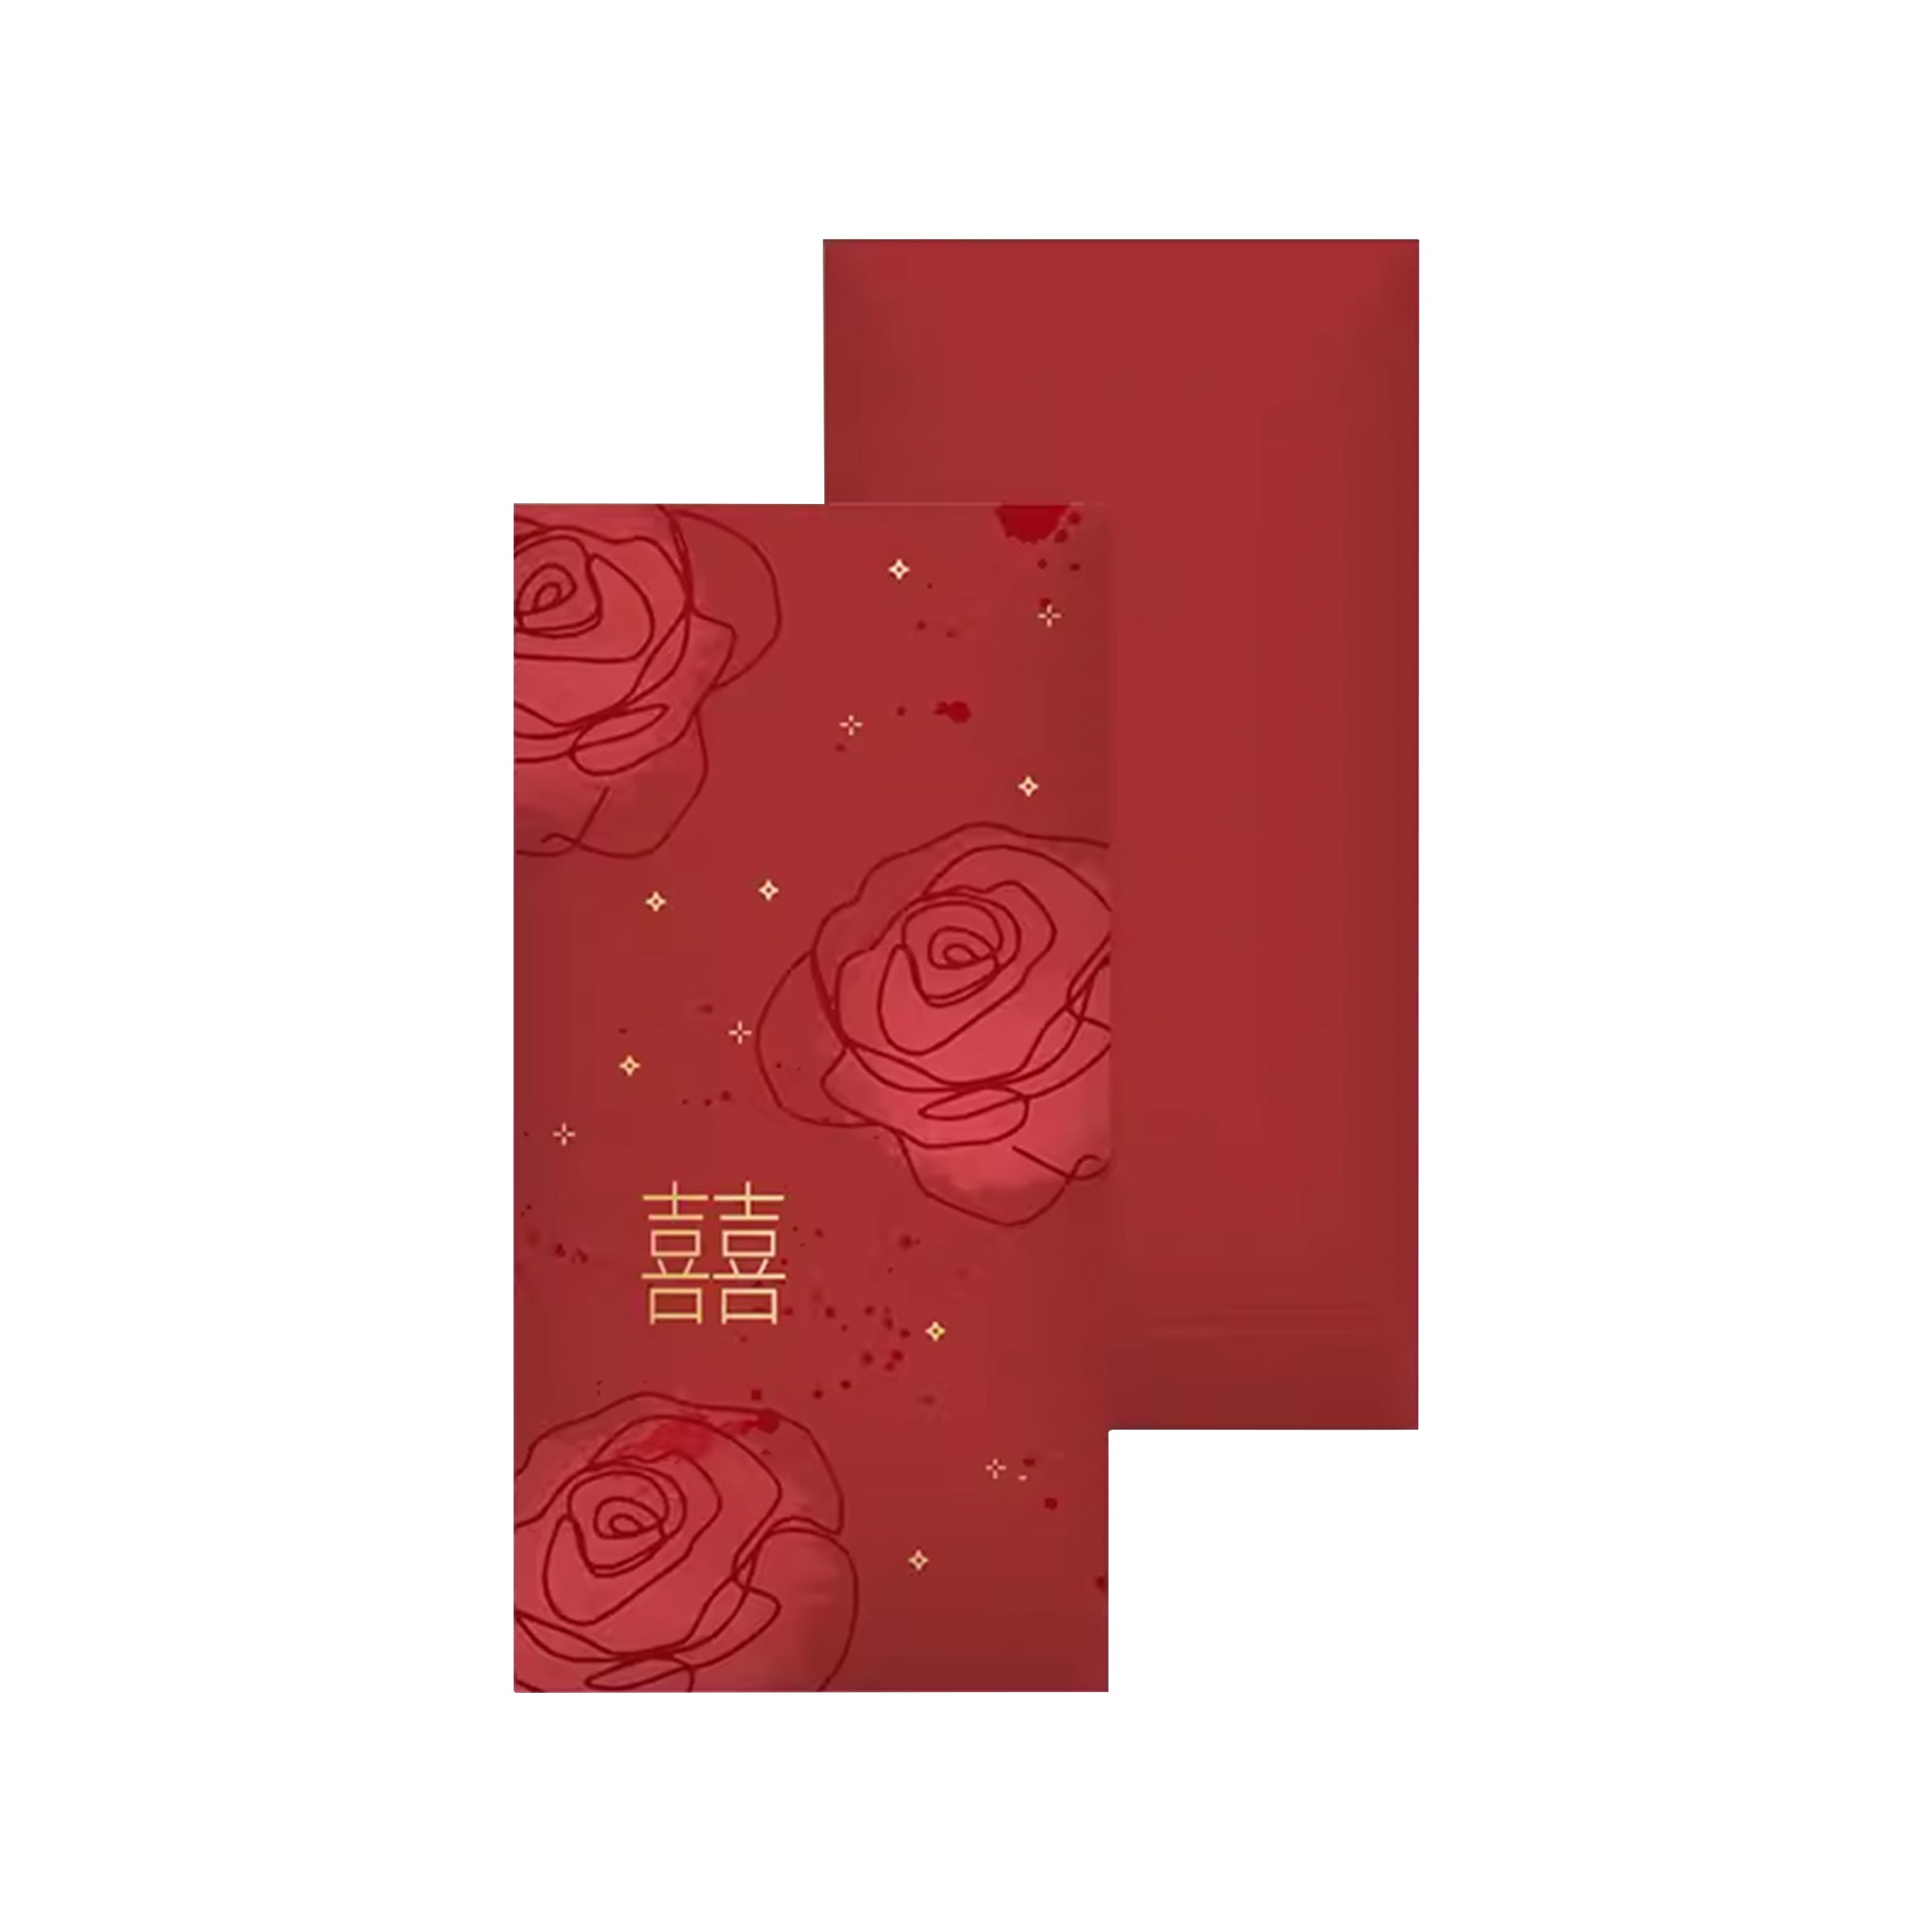 Printable And Customizable Red Envelopes | 客製彩印公司logo利是封